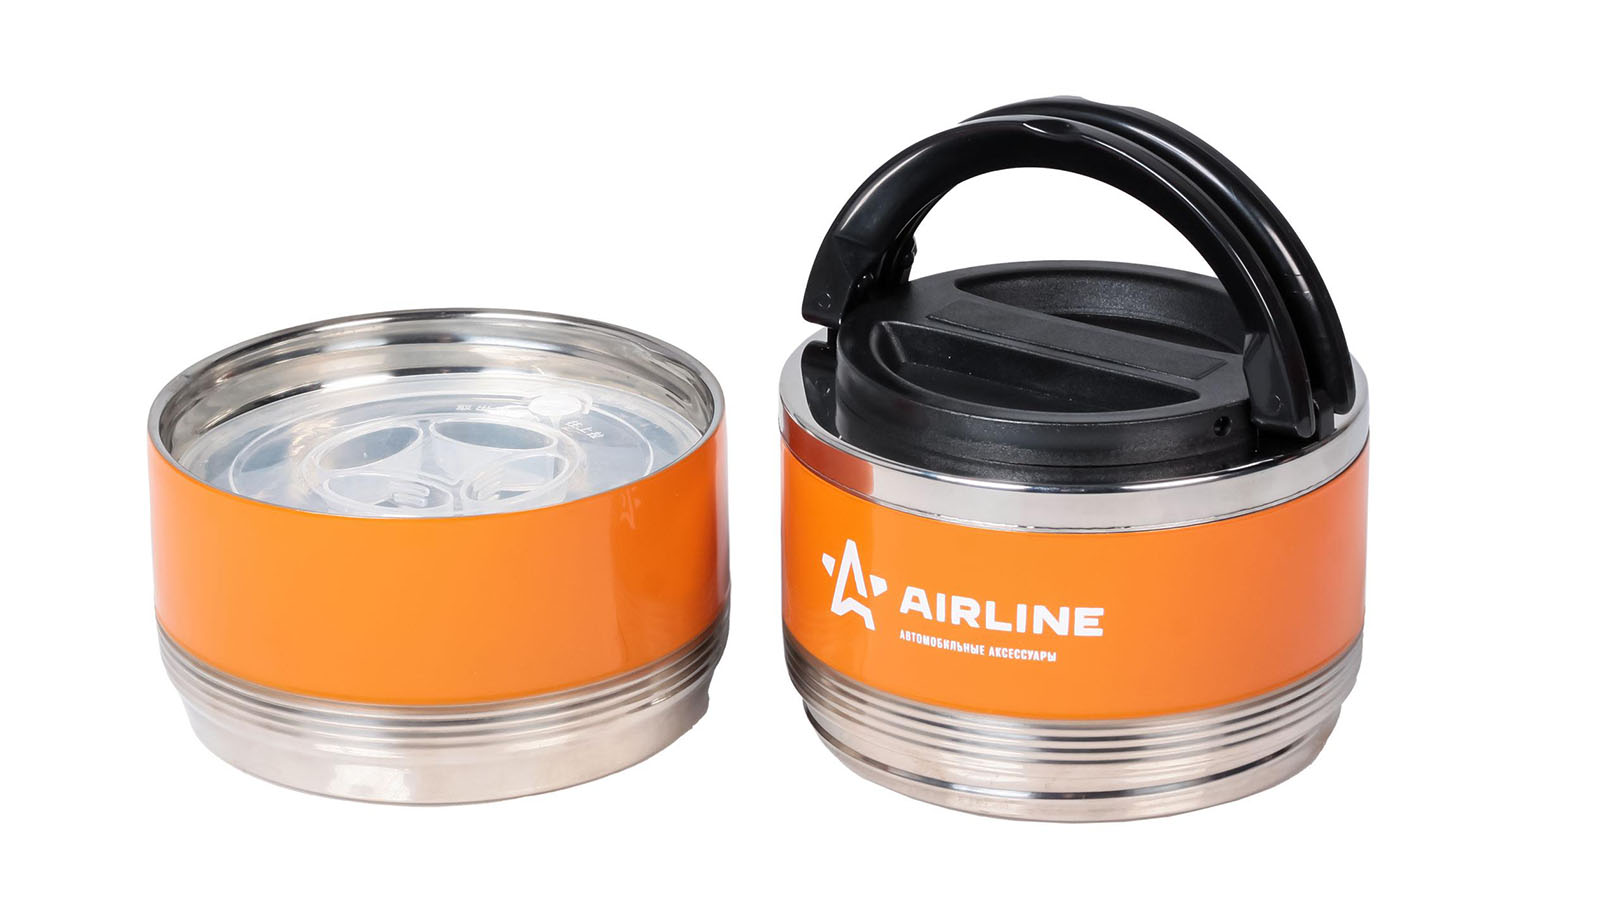 Термос AIRLINE ланч-бокс 1.4л, 2 контейнера с ручкой, нержавеющая сталь оранжево-черный фотография №2